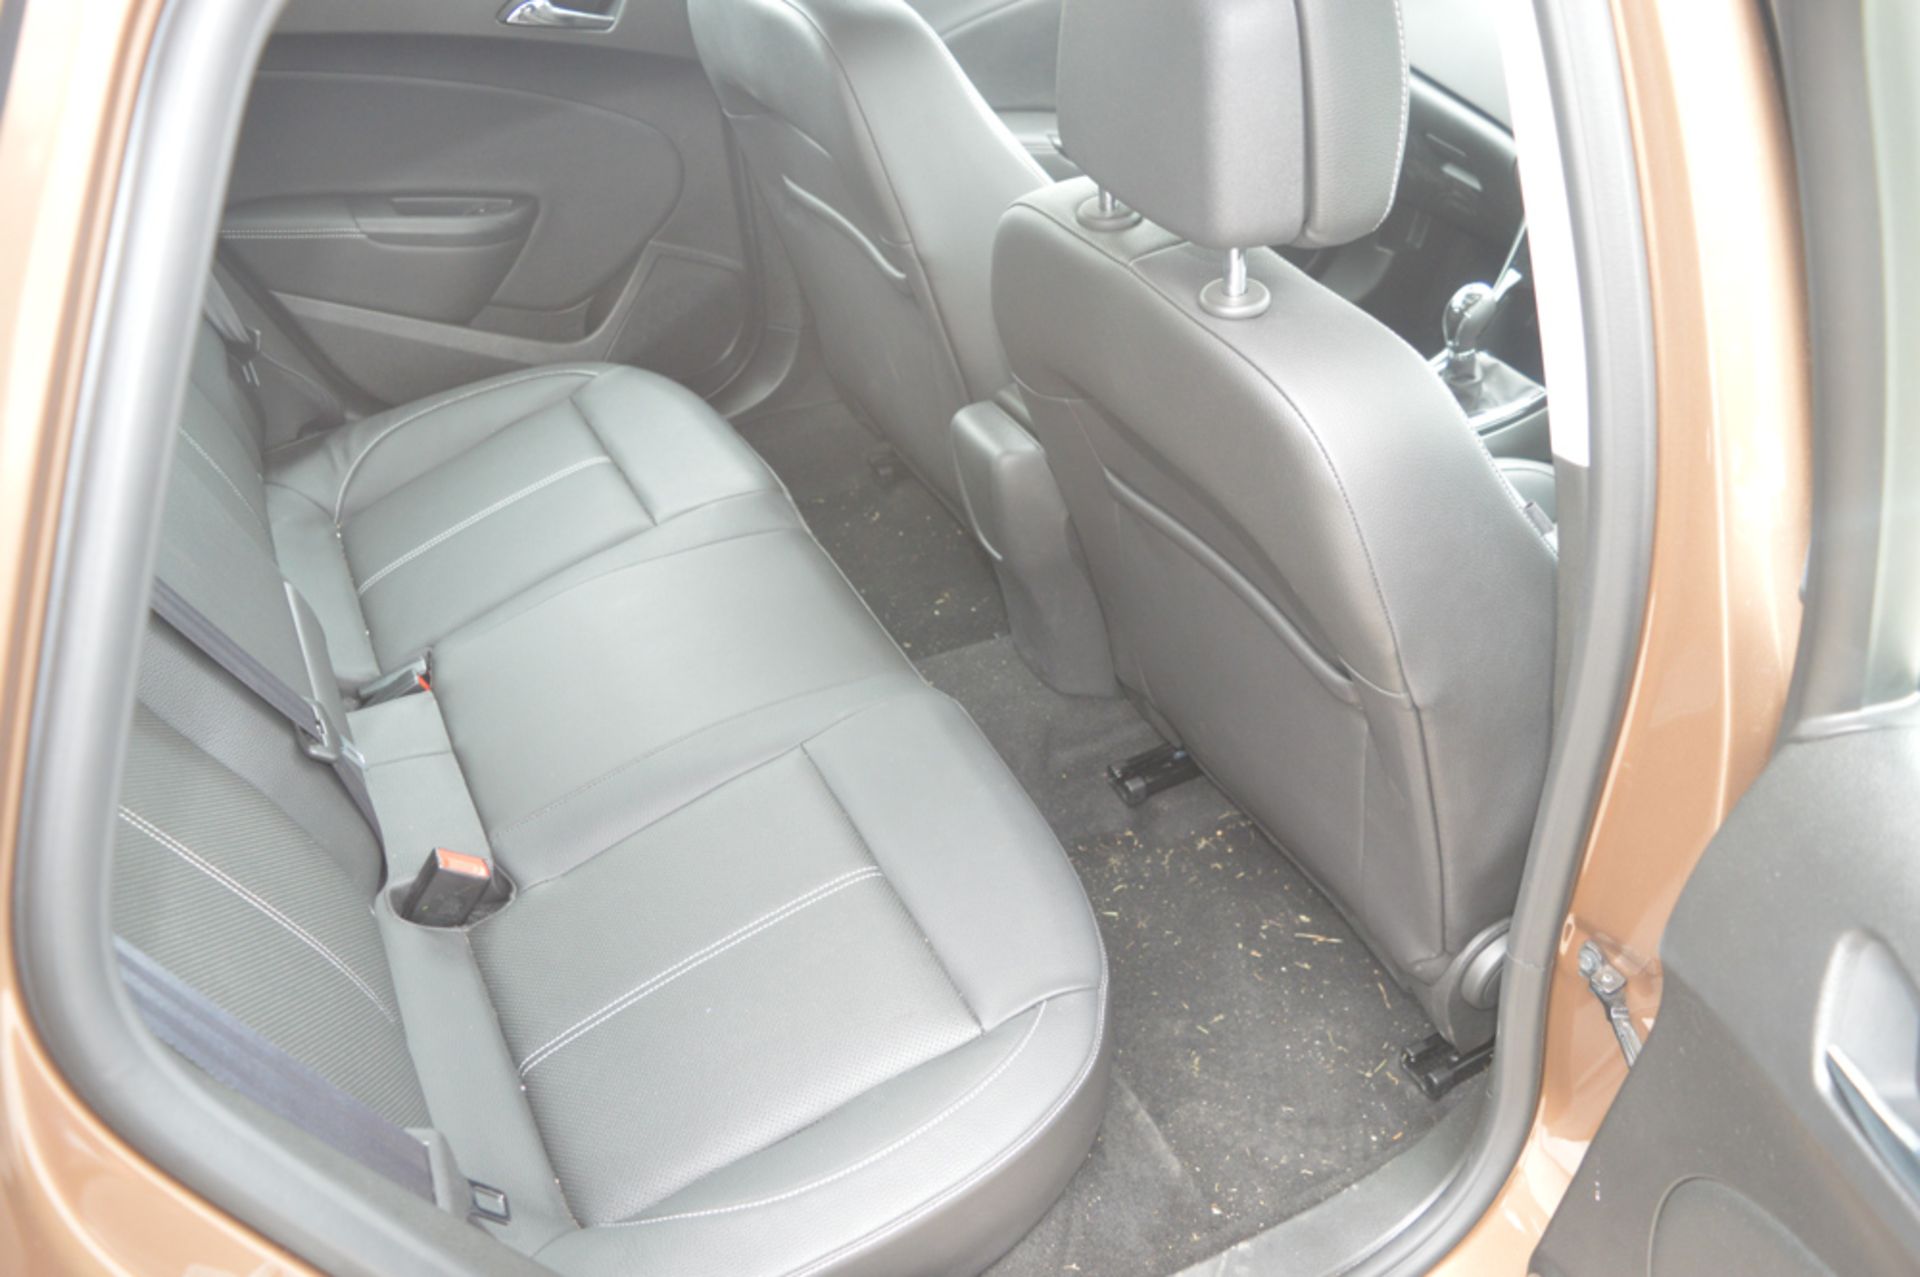 Vauxhall Astra 1.6 i VVT 16v Elite 5dr Hatchback Registration number: DL65 DMZ  Date of - Image 7 of 9